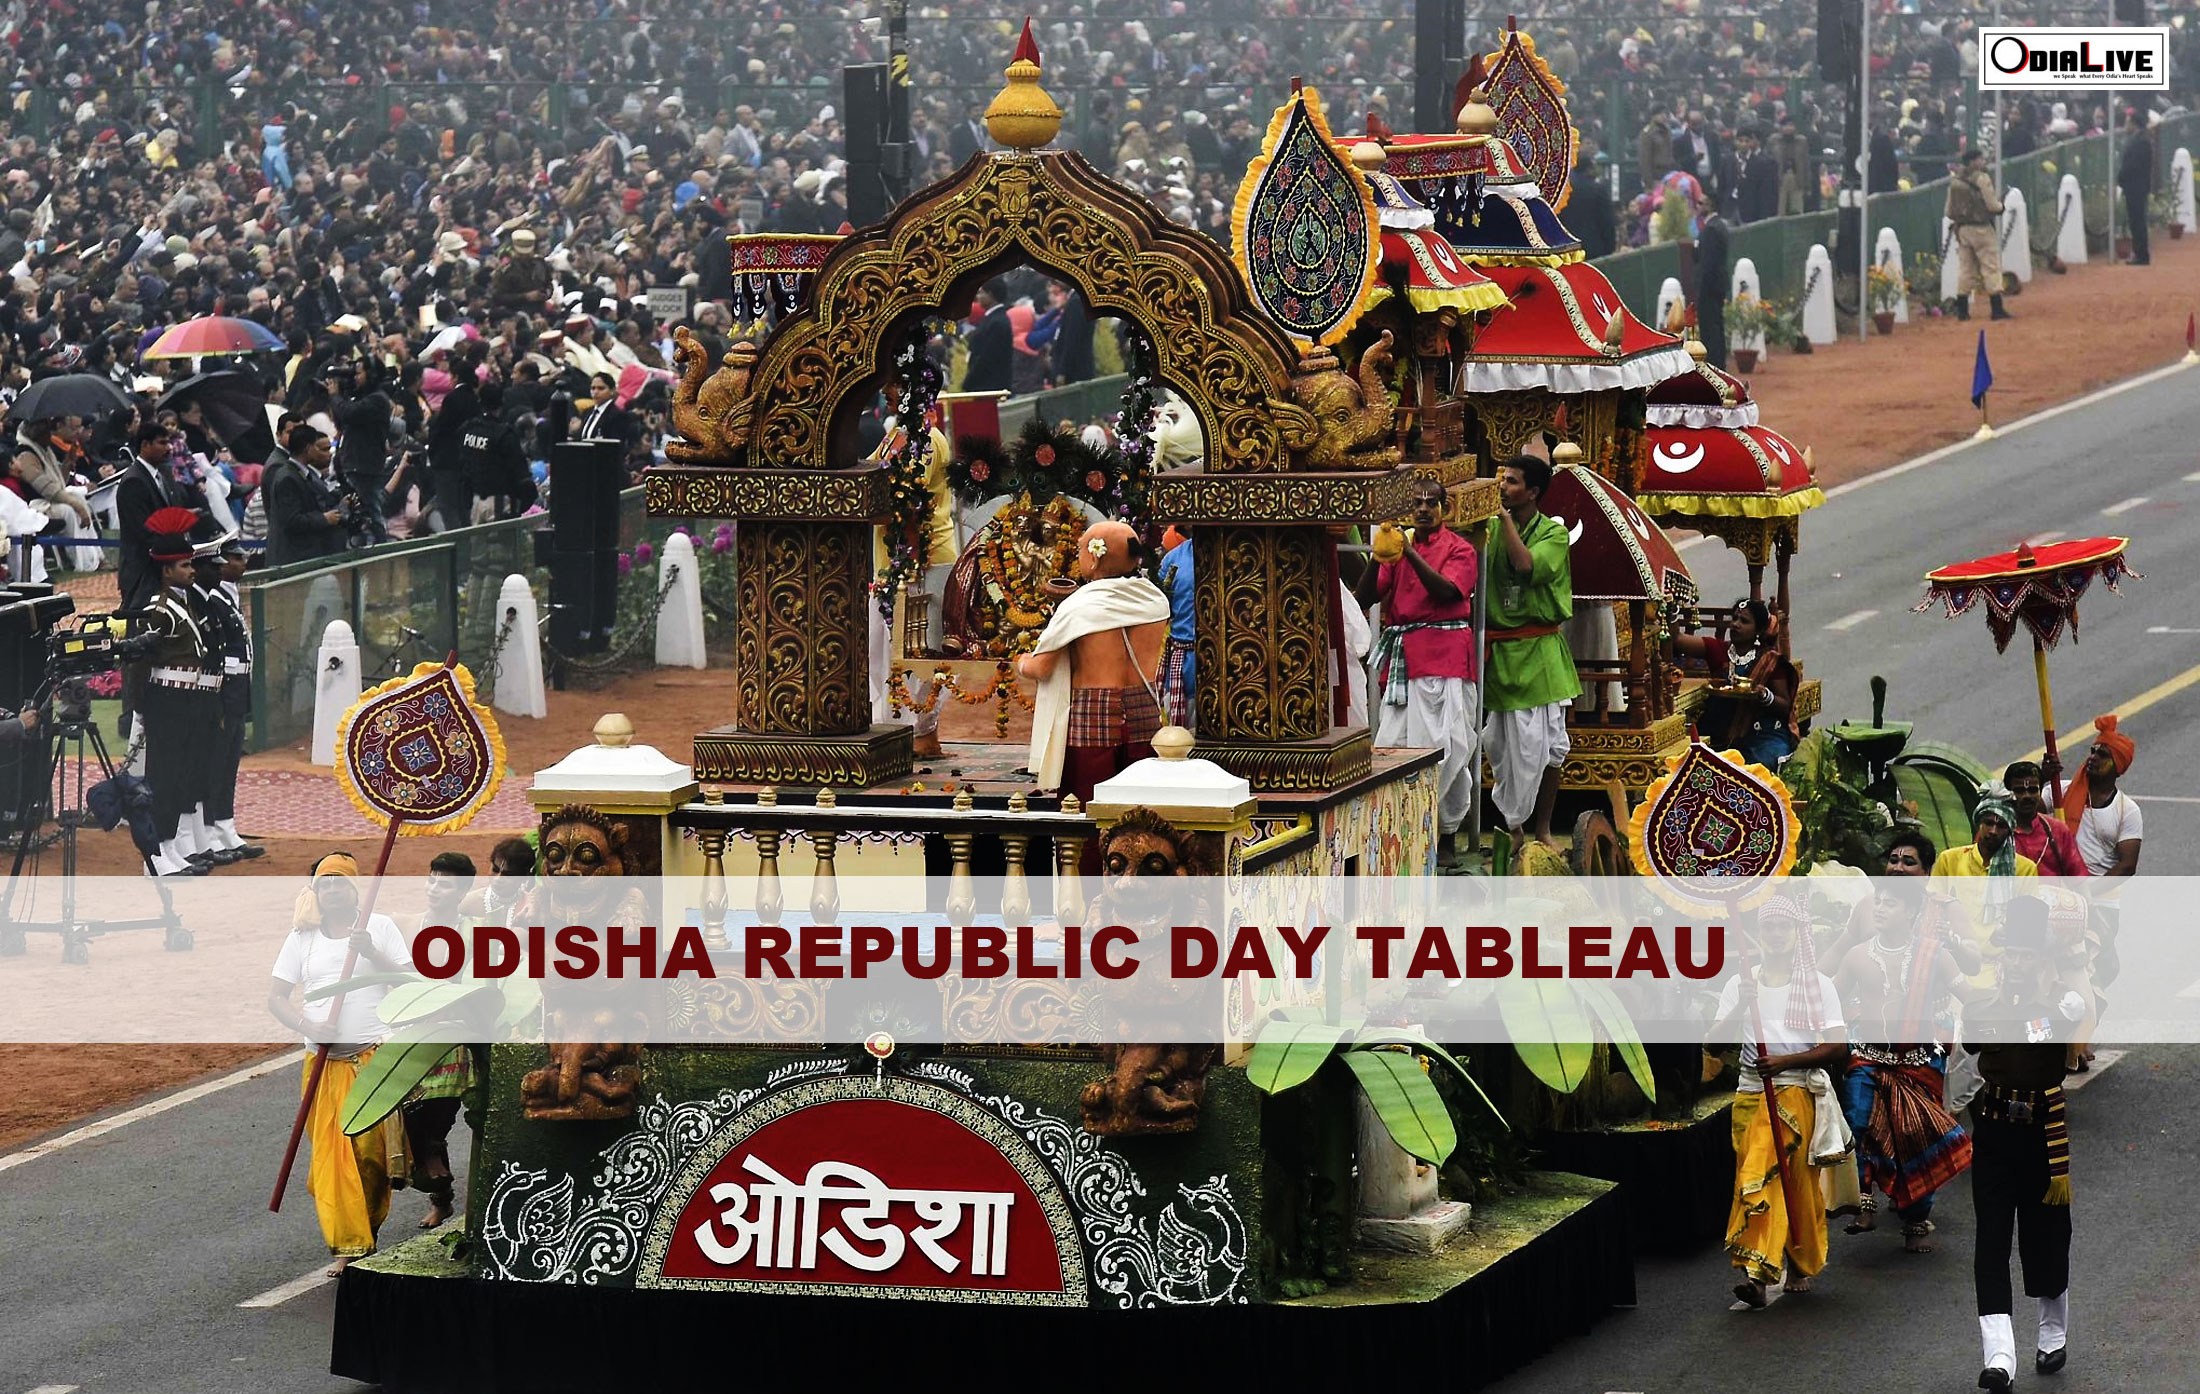 Odisha Tableau at Republic Day Parade at Rajpath